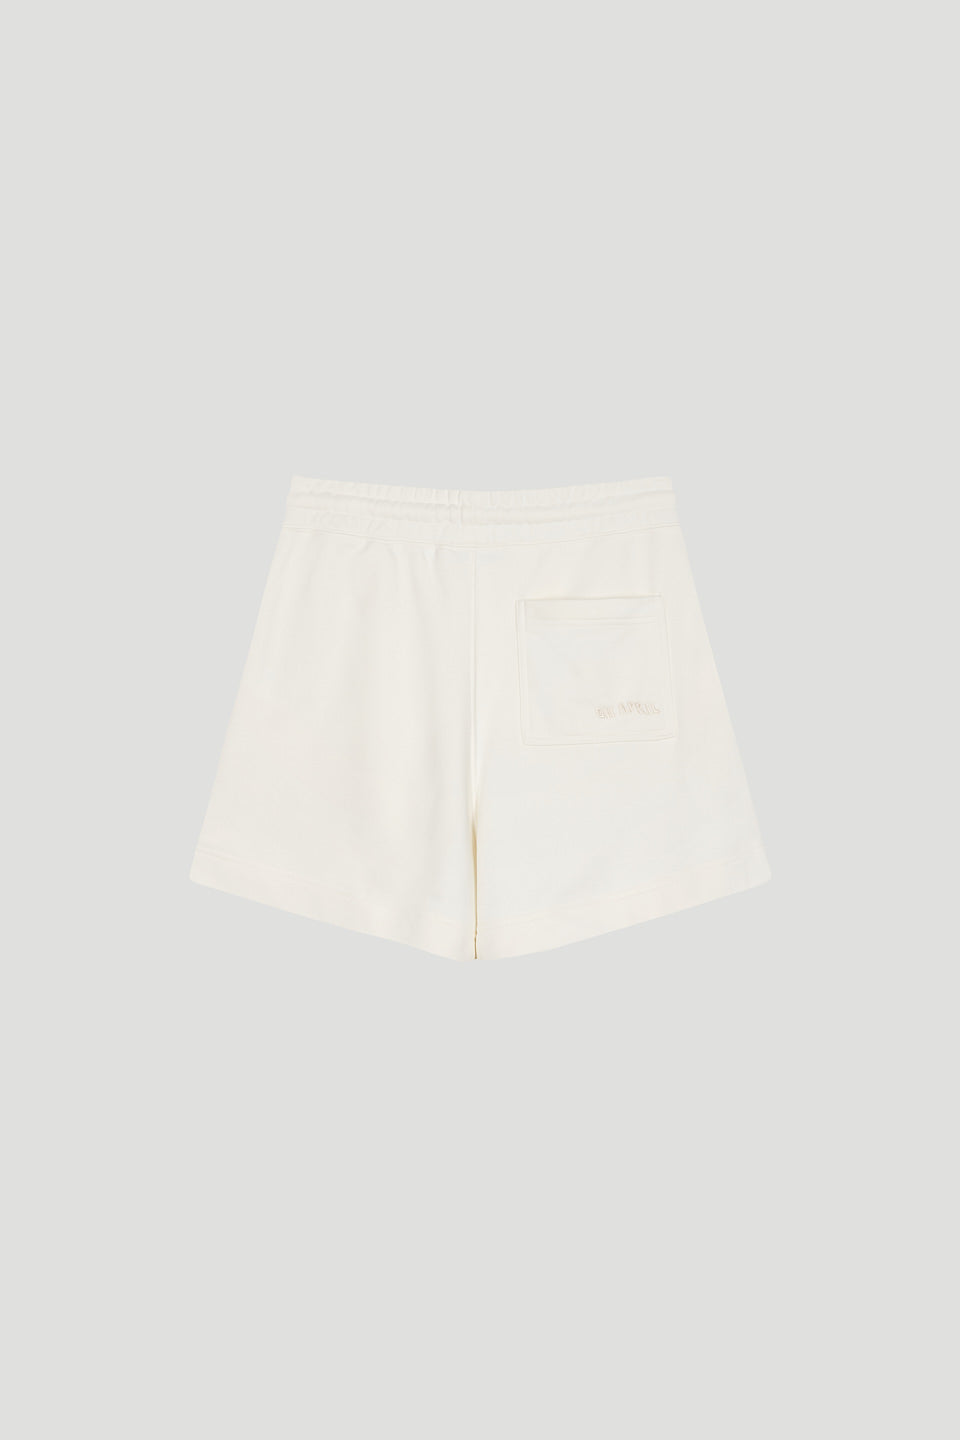 Lavi Shorts Off White